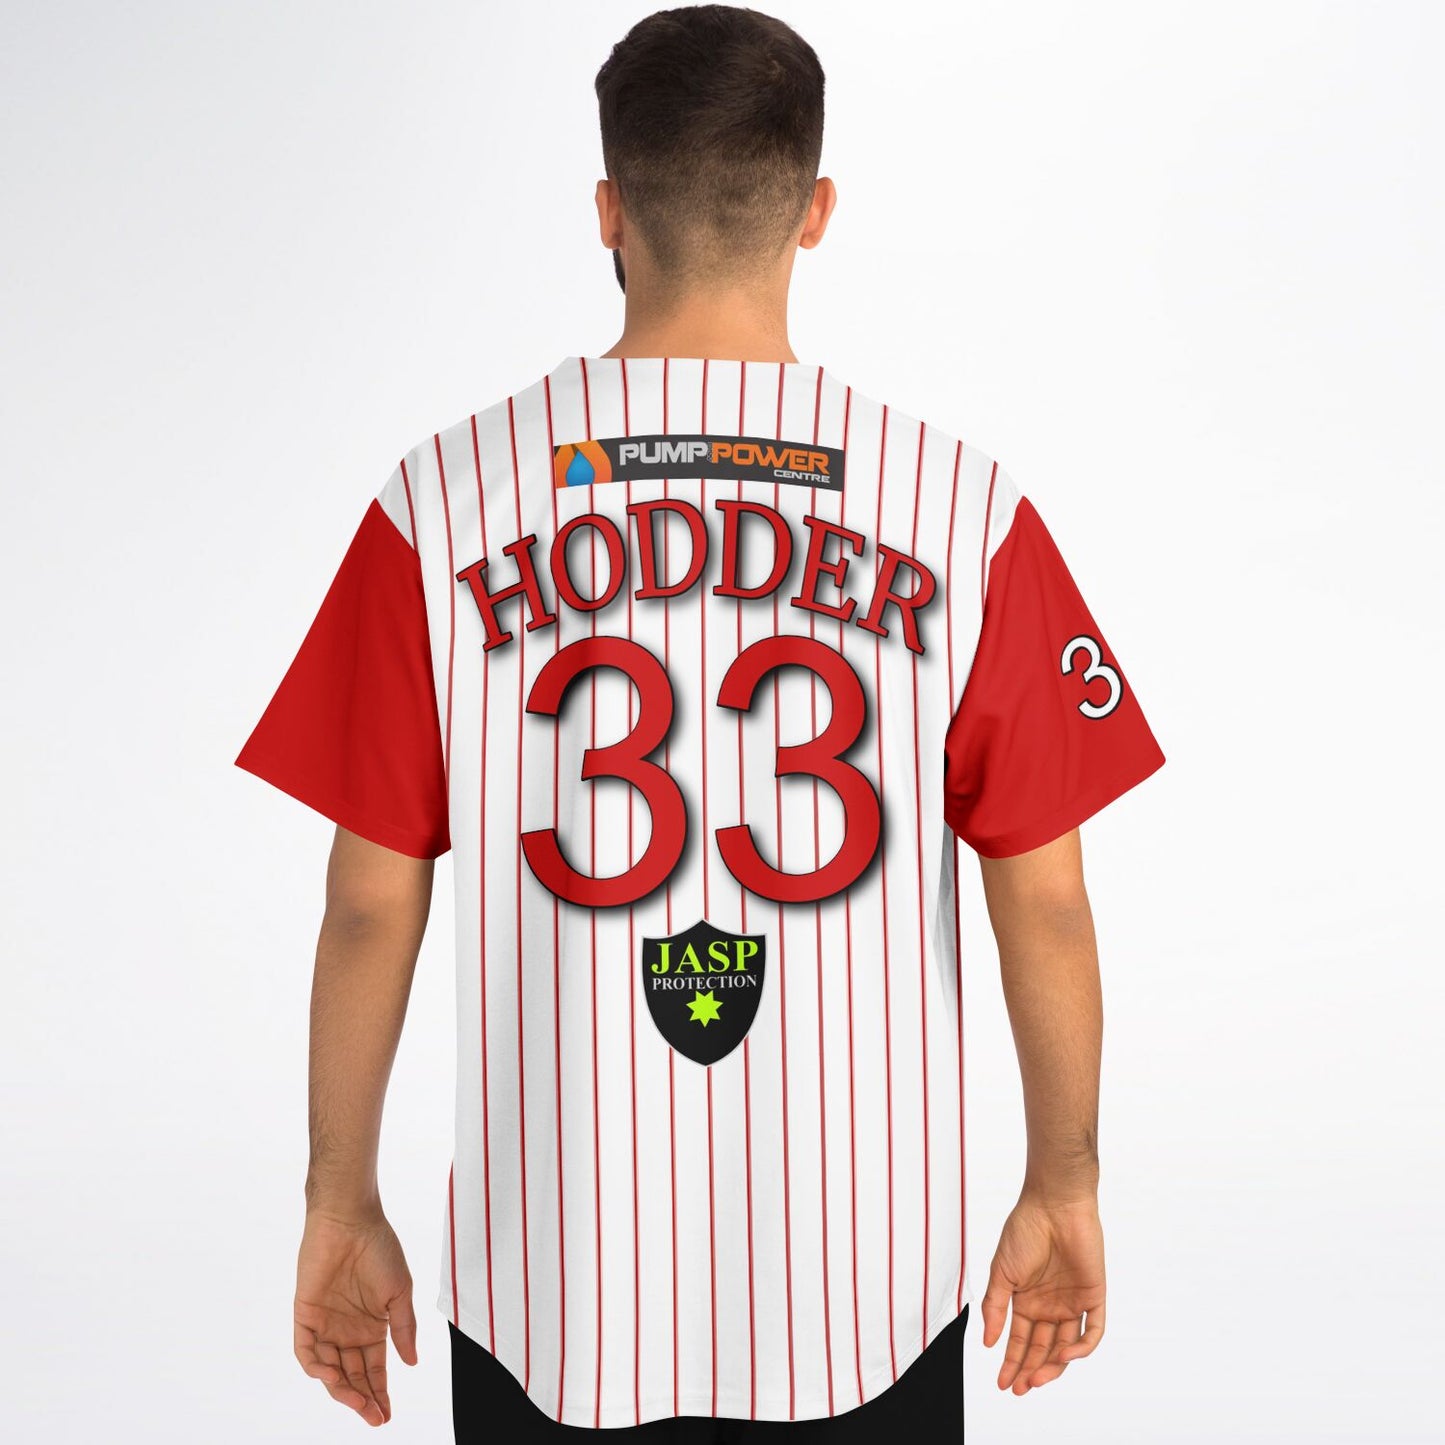 Steve Hodder #33 Demons Baseball Jersey - Home